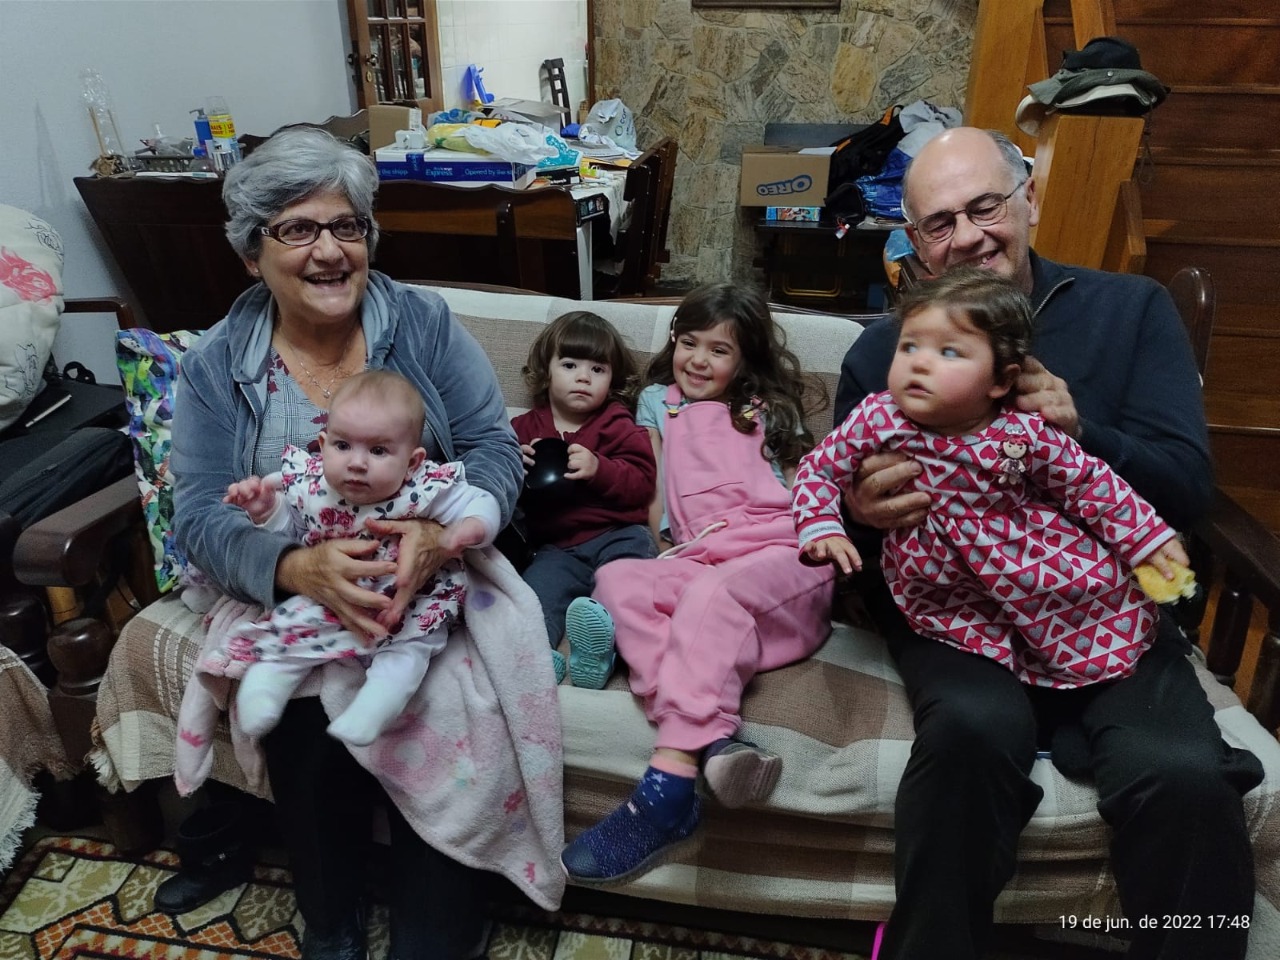 Na imagem há um casal de idosos com quatro crianças. Duas crianças estão sentadas no sofá e dois bebês estão no colo dos adultos. Eles estão sorrindo. 